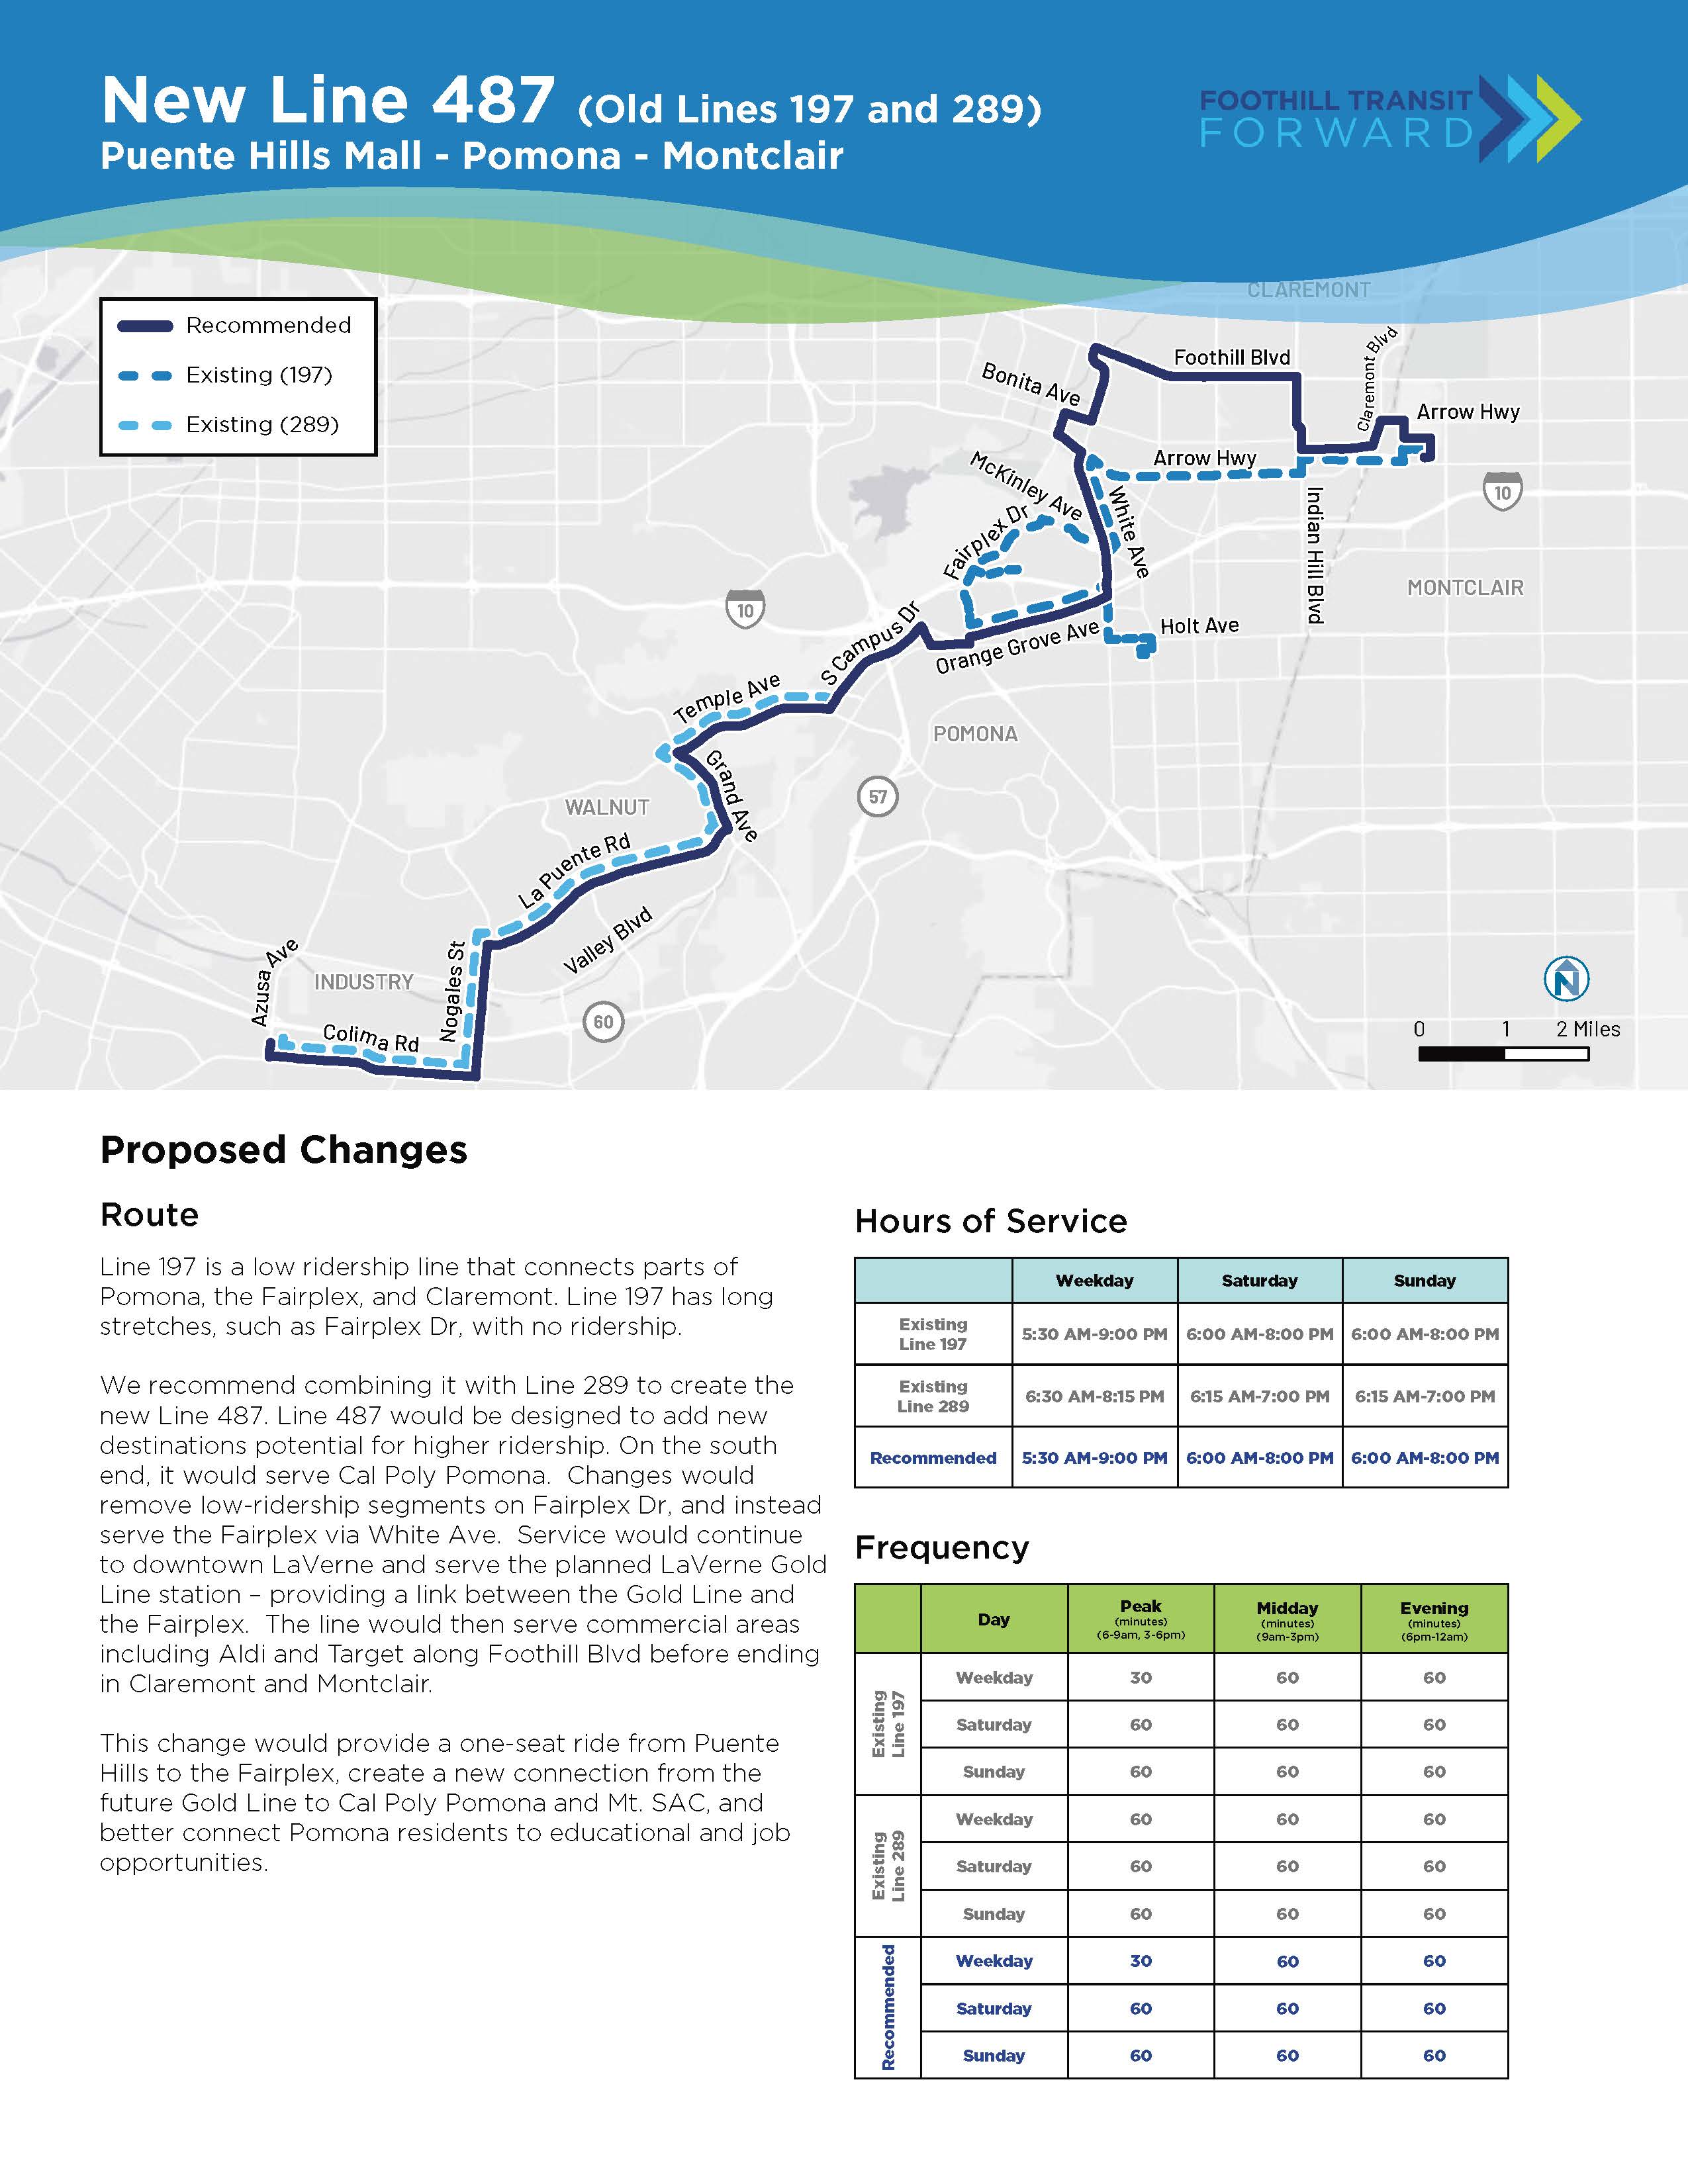 我们建议将低客流量的 197 号线与 289 号线合并，以创建新的 487 号线。487 号线将增加新的高客流量目的地，如加州保利波莫纳。 更改将 Fairplex Dr 的低客流量路段替换为通过 White Ave 到 Fairplex 的服务。服务将包括计划中的 LaVerne Gold Line 车站，提供 Gold Line 和 Fairplex 之间的连接。 然后，该线路将服务商业区，包括沿山麓大道的 Aldi 和 Target，终止于克莱蒙特和蒙特克莱尔。